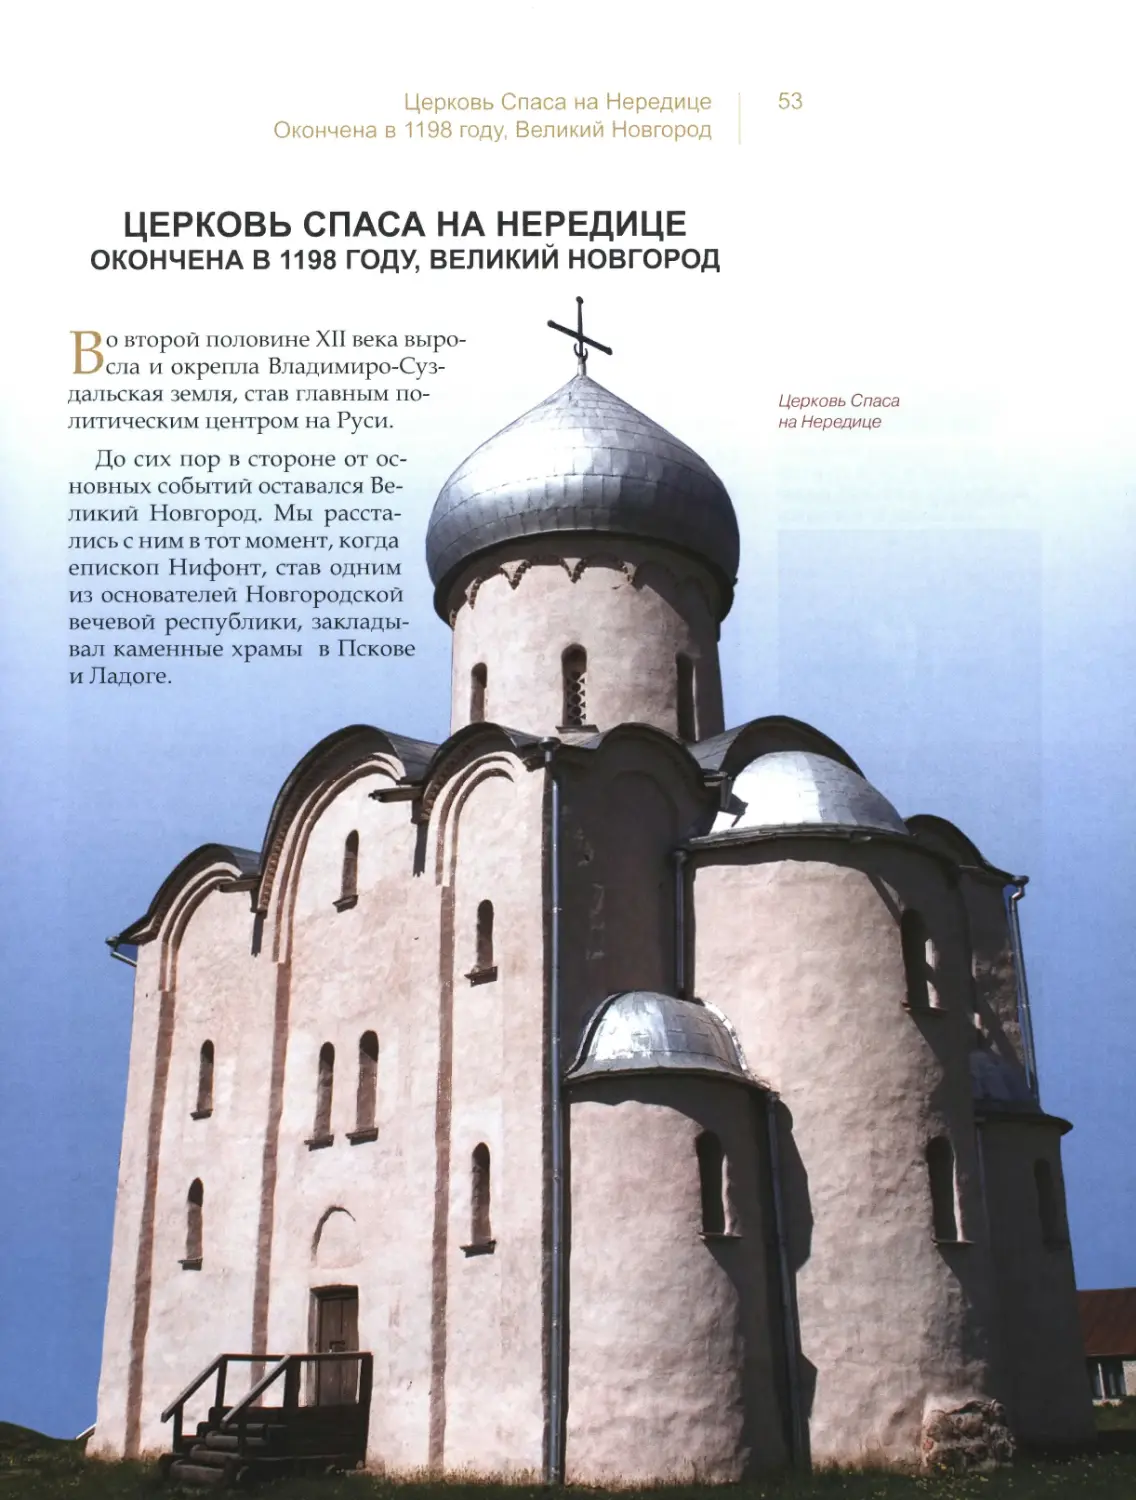 Церковь Спаса на Нередице, Великий Новгород